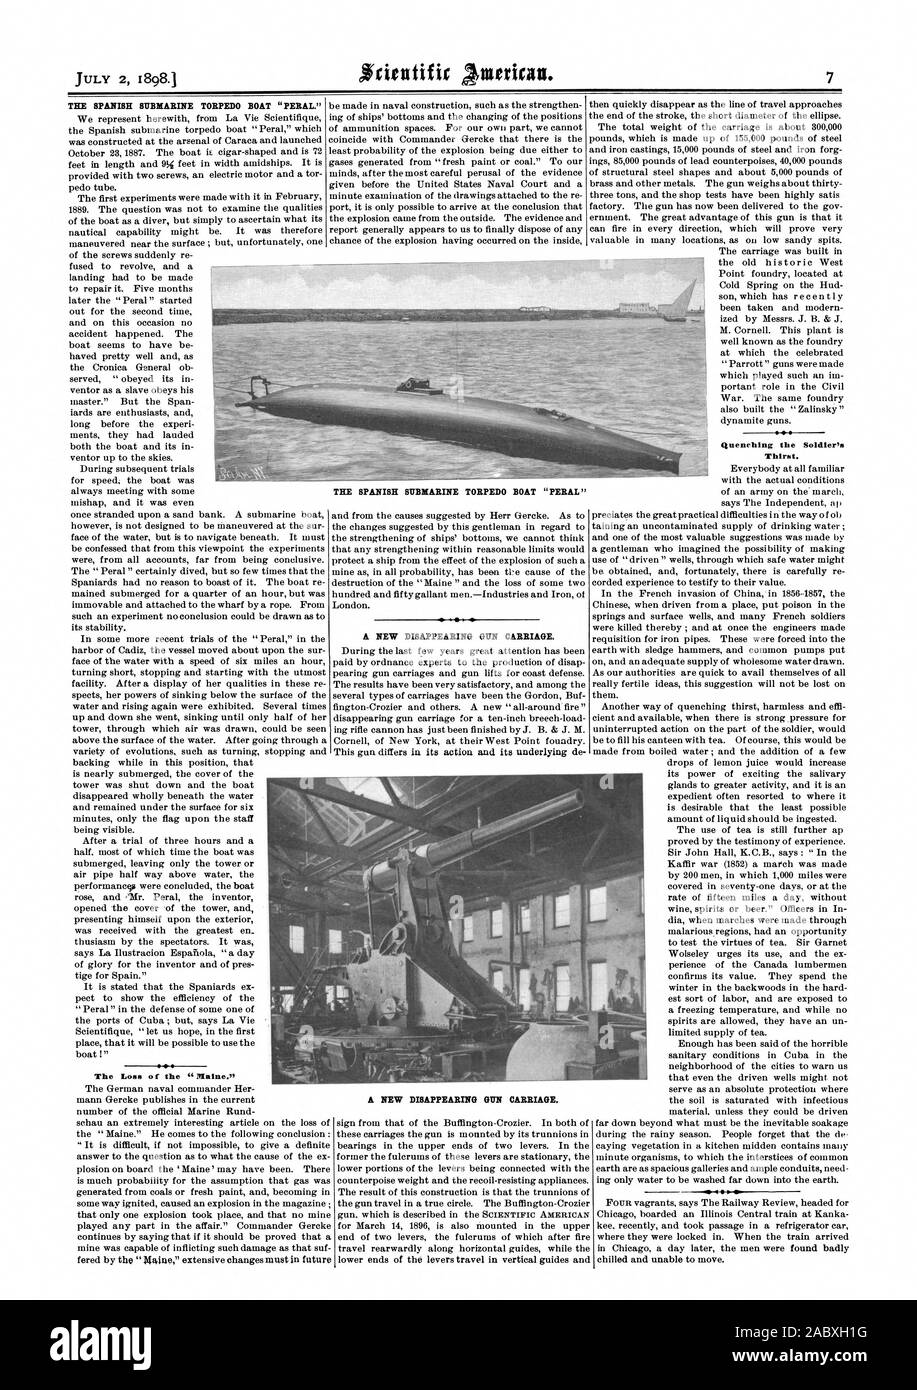 Die spanische SUBMARINE TORPEDO BOOT 'PERAL." Der Verlust der Abschreckung des Soldaten Durst. Eine Neue DISAPPEARING GUN BEFÖRDERUNG. Die spanische U-BOOT TORPEDOBOOT" peral "EINE NEUE DISAPPEARING GUN BEFÖRDERUNG., Scientific American, 1898-07-02 Stockfoto